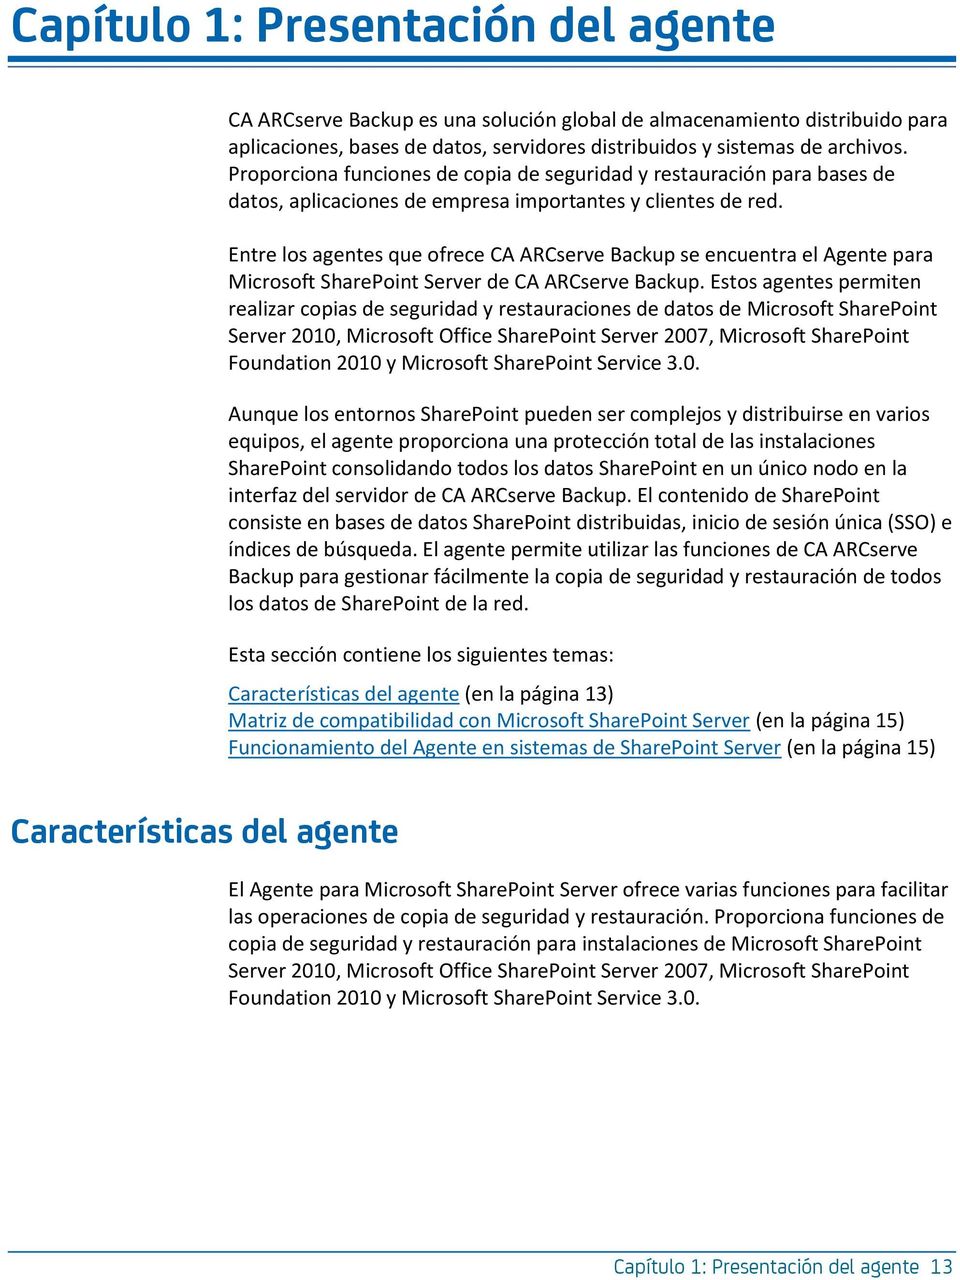 Entre los agentes que ofrece CA ARCserve Backup se encuentra el Agente para Microsoft SharePoint Server de CA ARCserve Backup.